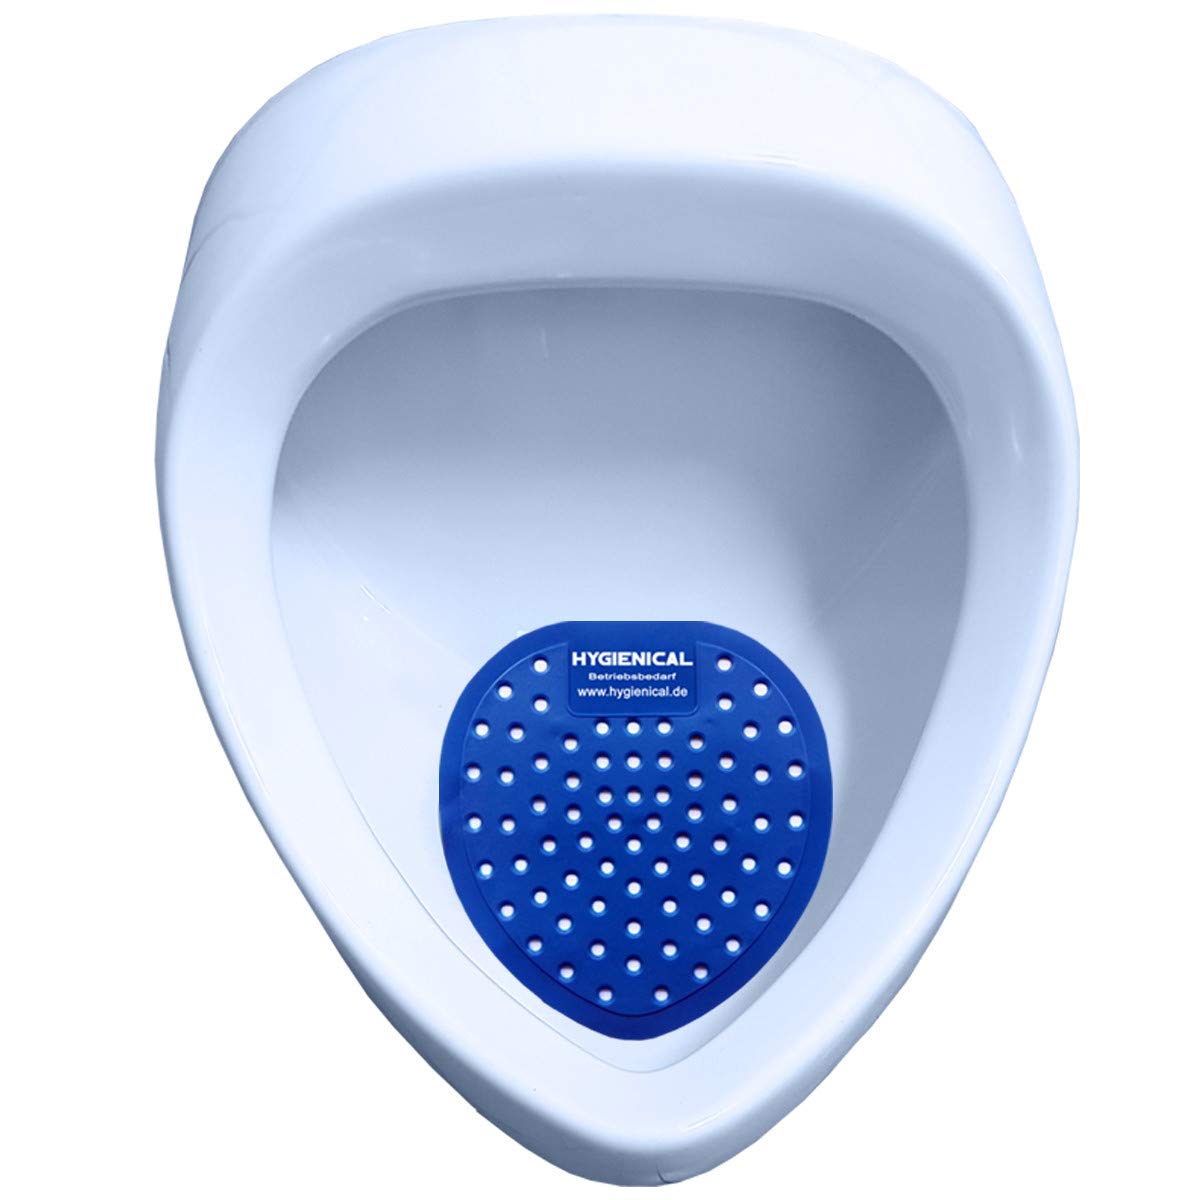 Urinalsieb, Pissoir-Einsatz, Urinaleinsatz parfümiert im SET, Urinaleinlage mit verschiedenen Düften, Farbe:blau, Größe:12 Stück